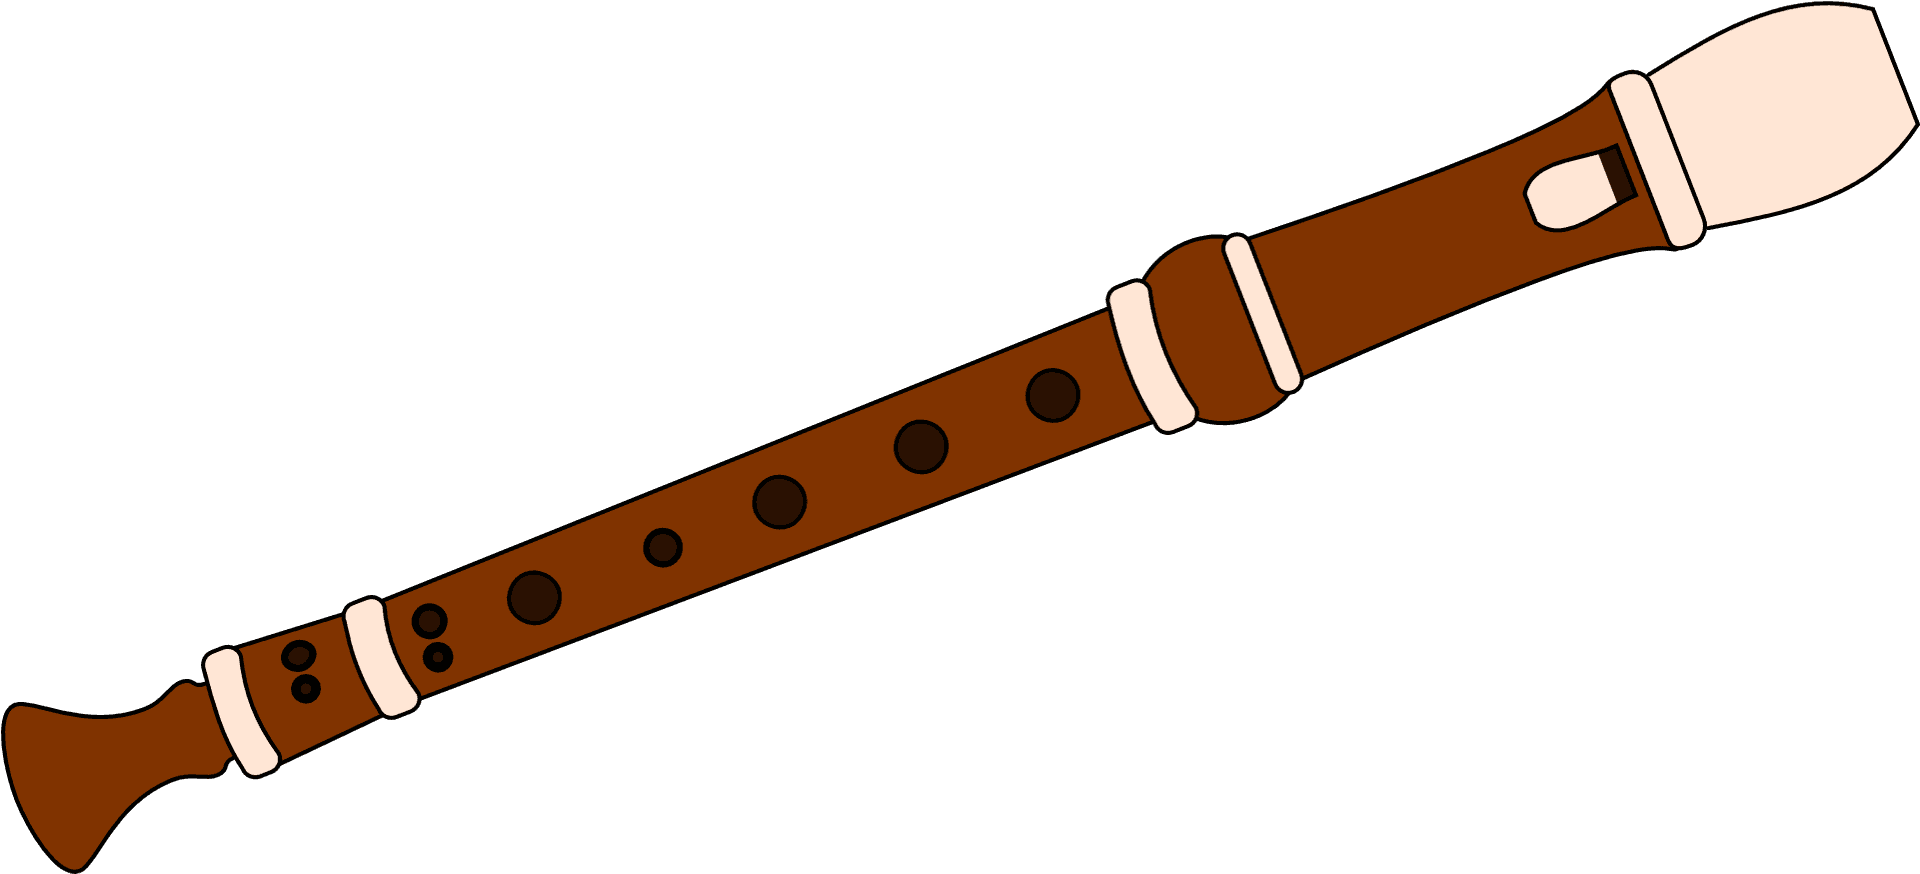 Wooden Flute Illustration.png PNG